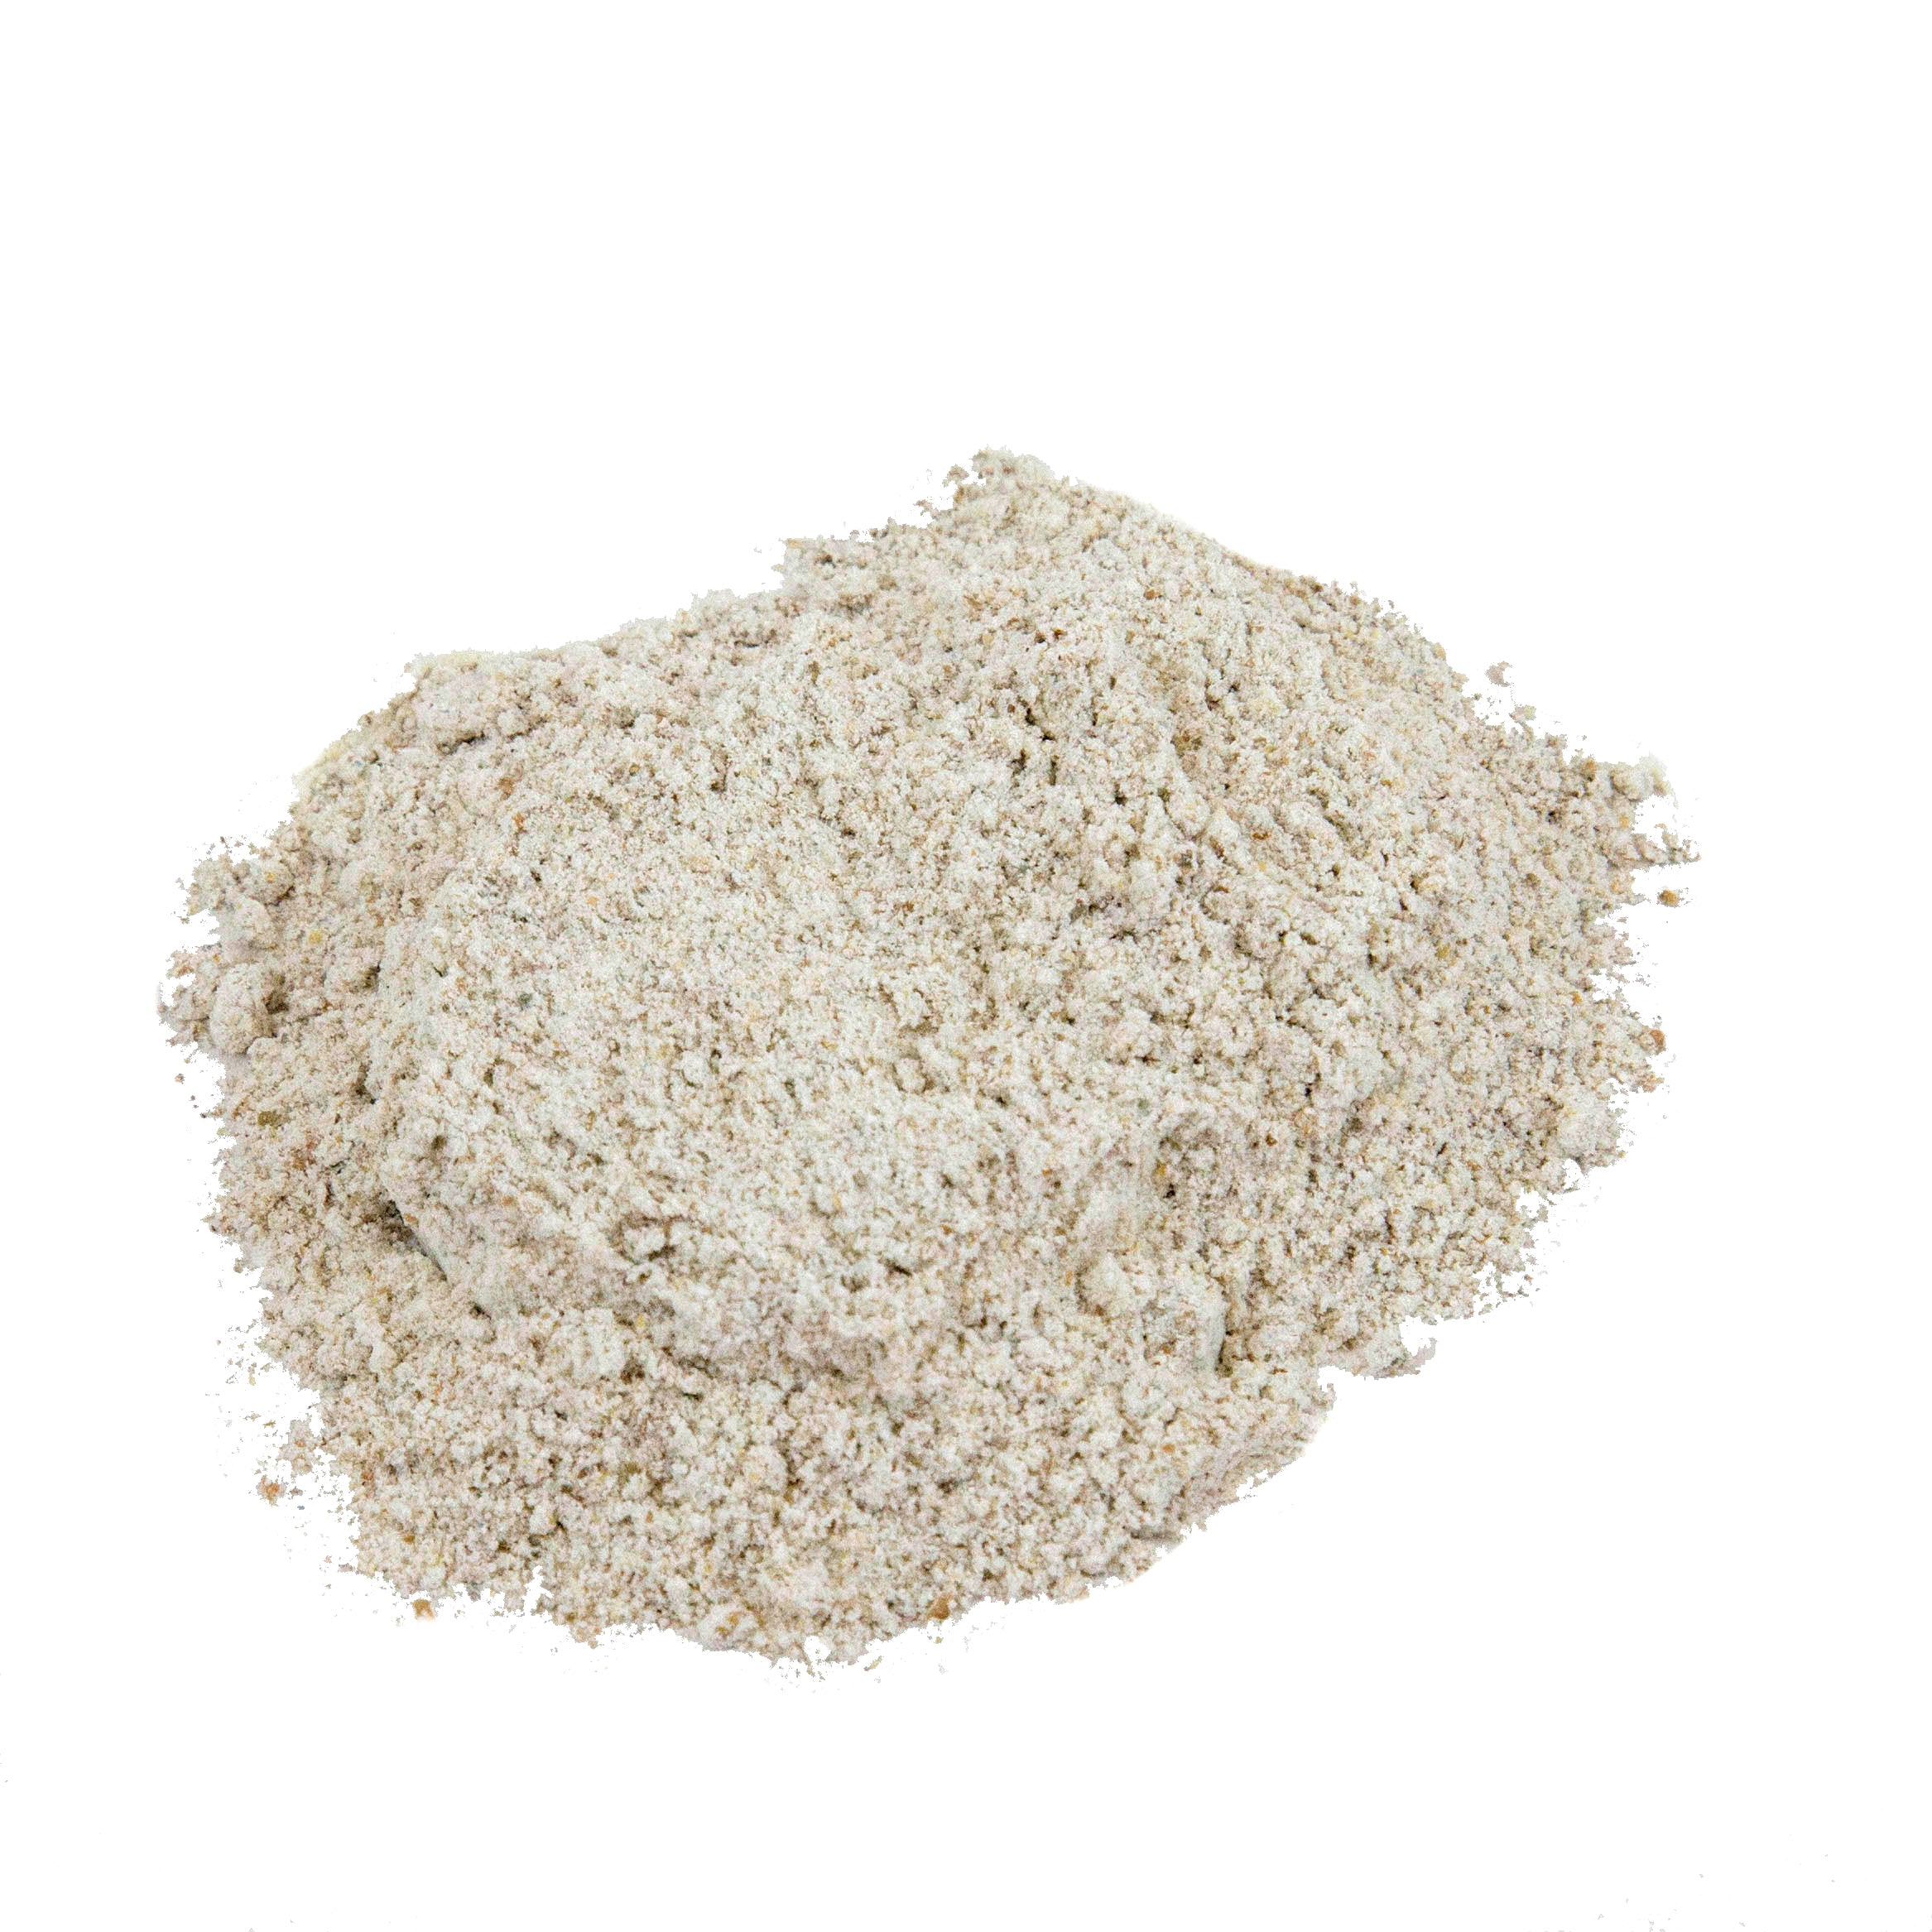 Lifestyle Markets Organic Stoneground Dark Rye Flour (400g) - Lifestyle Markets